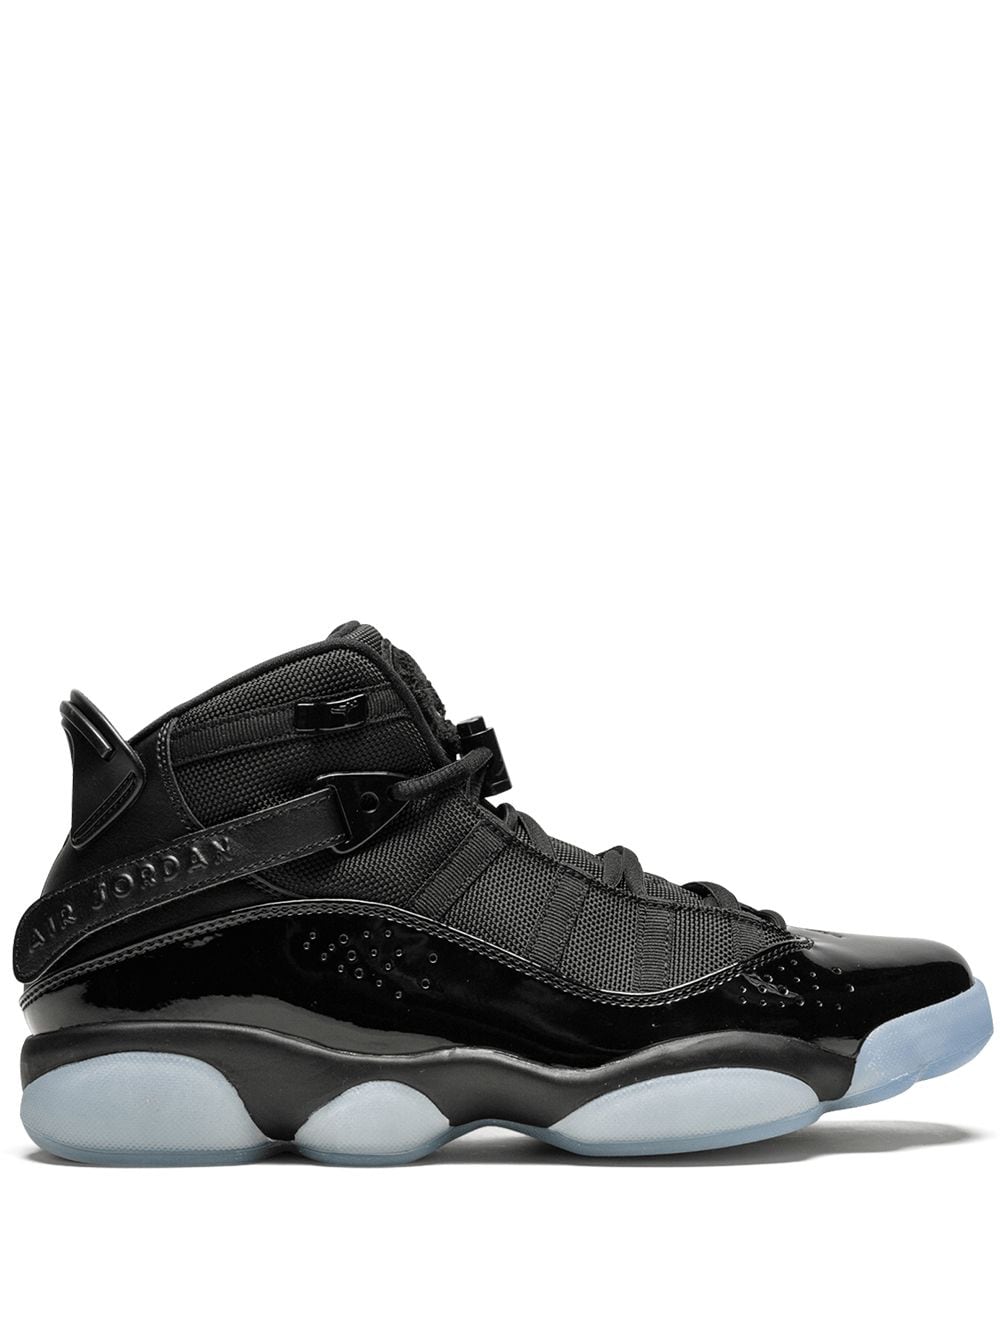 Jordan Air Jordan 6 Rings "Black Ice" sneakers